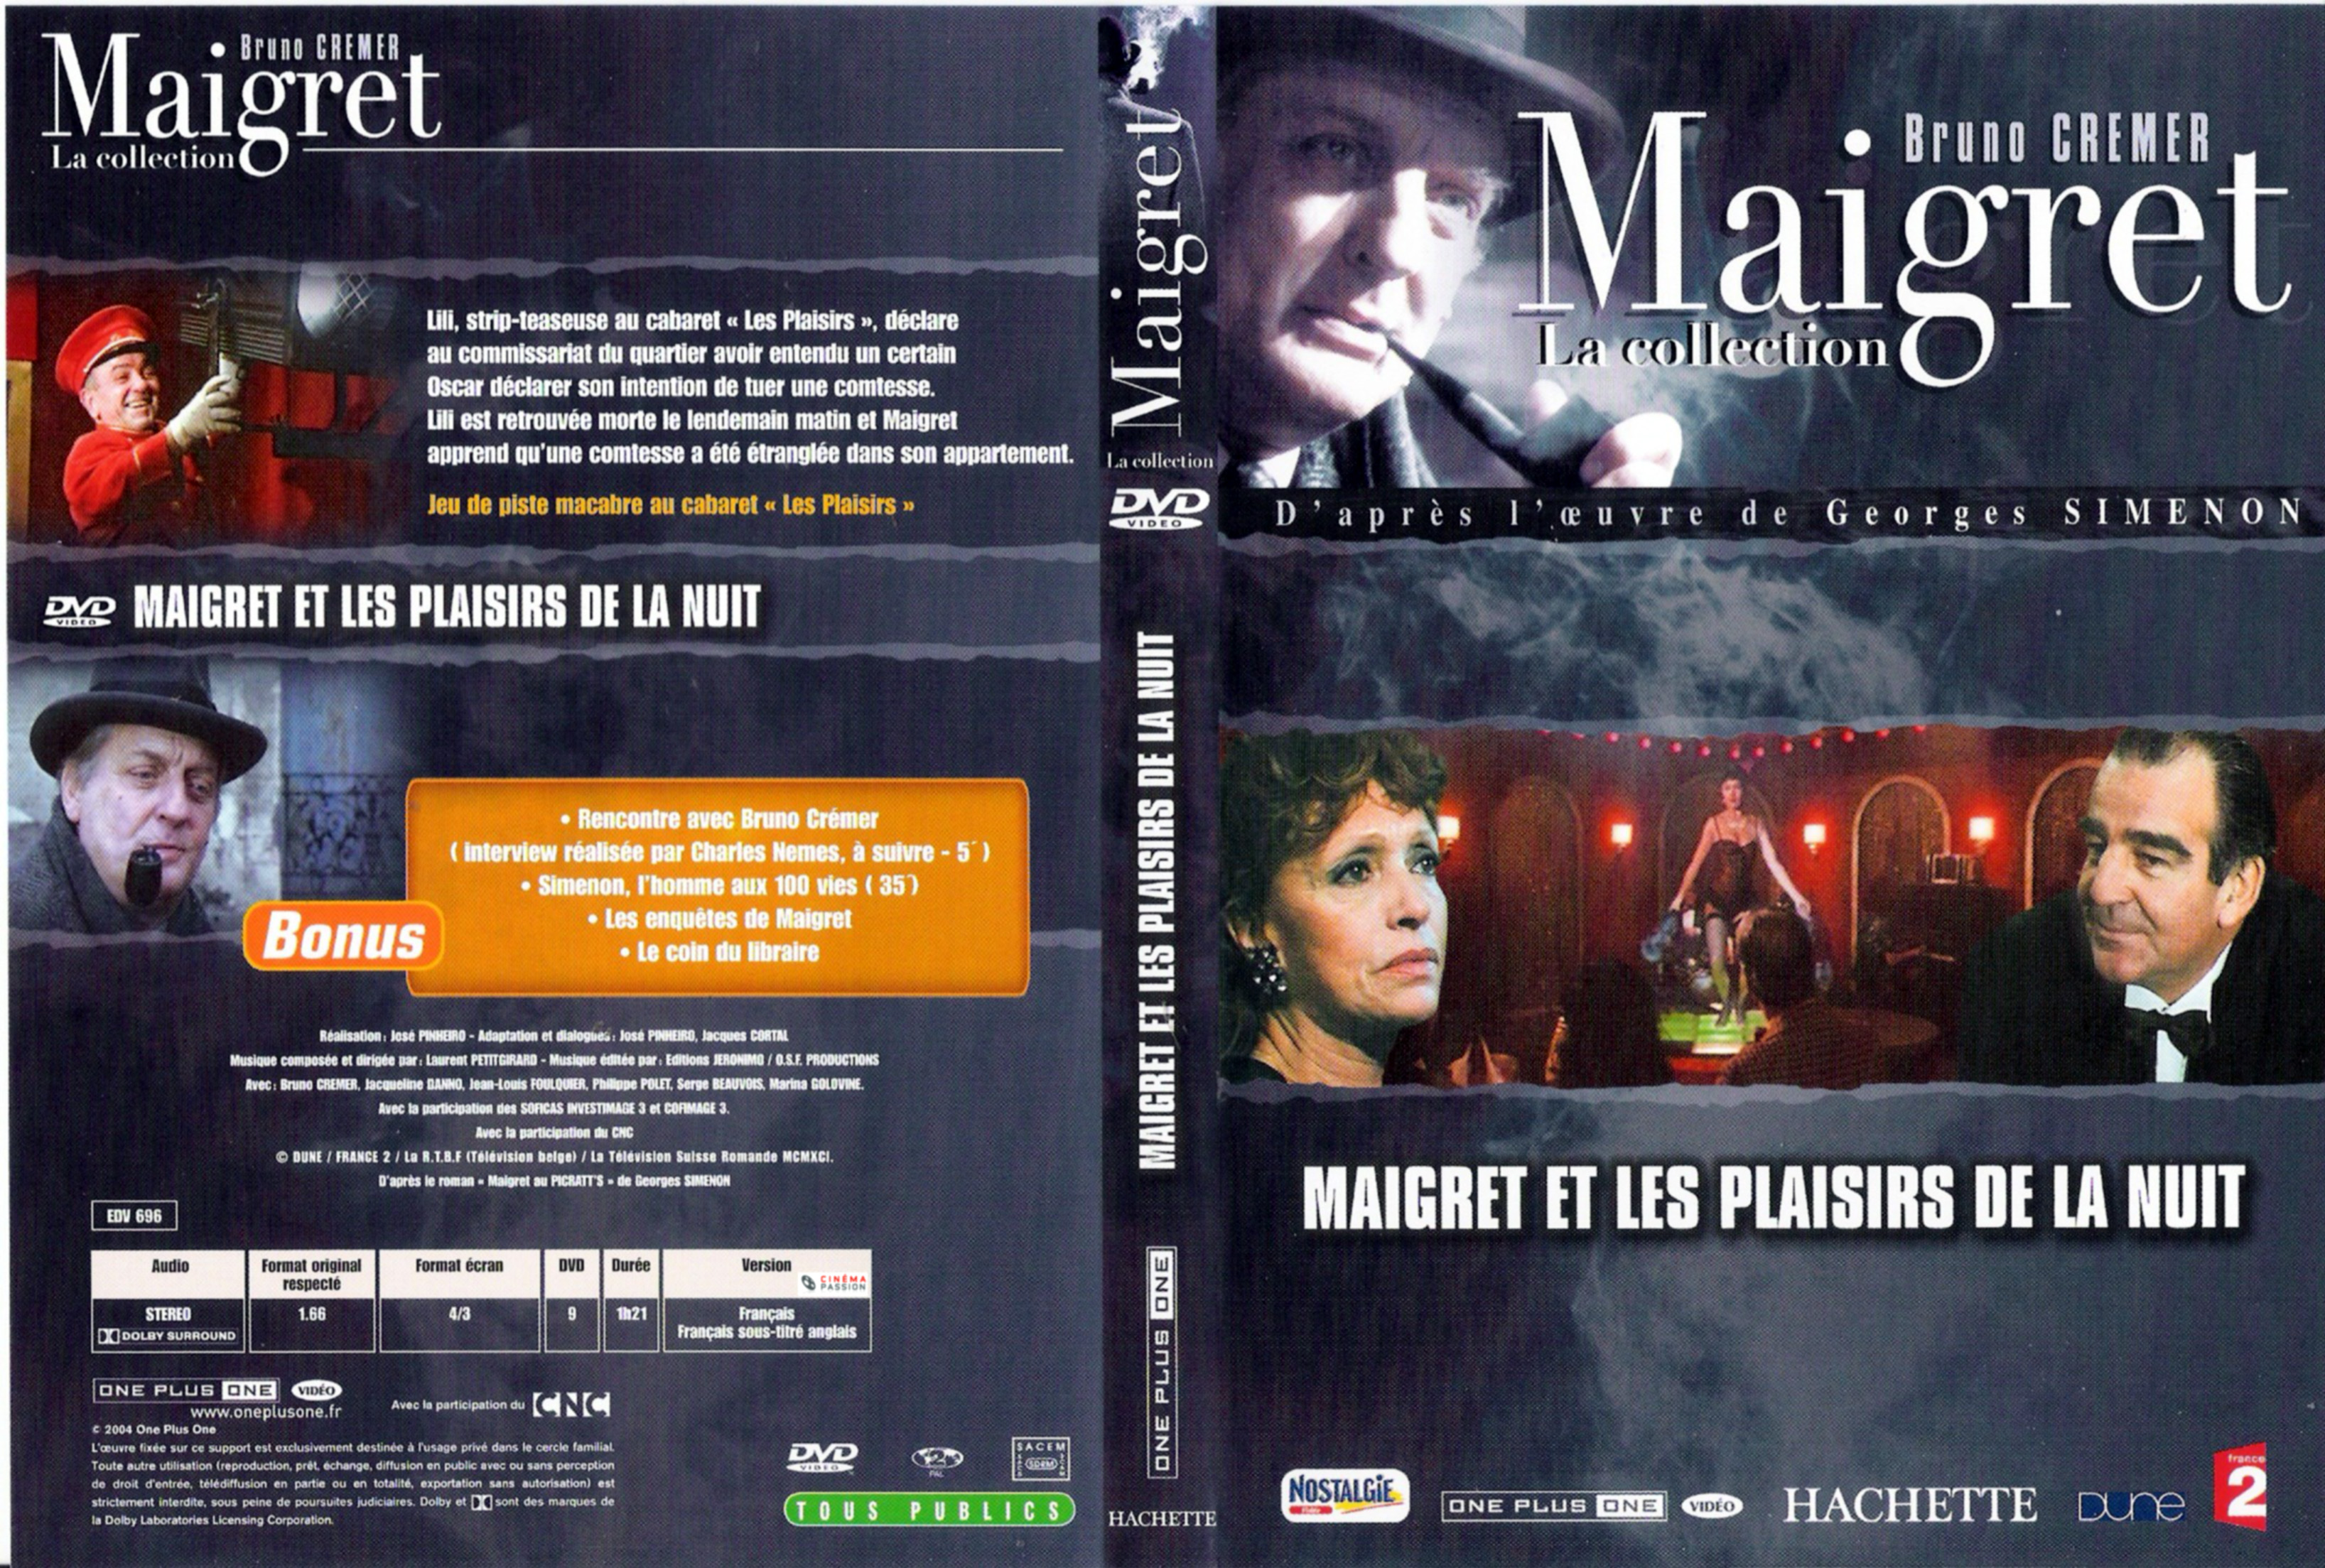 Jaquette DVD Maigret et les plaisirs de la nuit (Bruno Cremer)